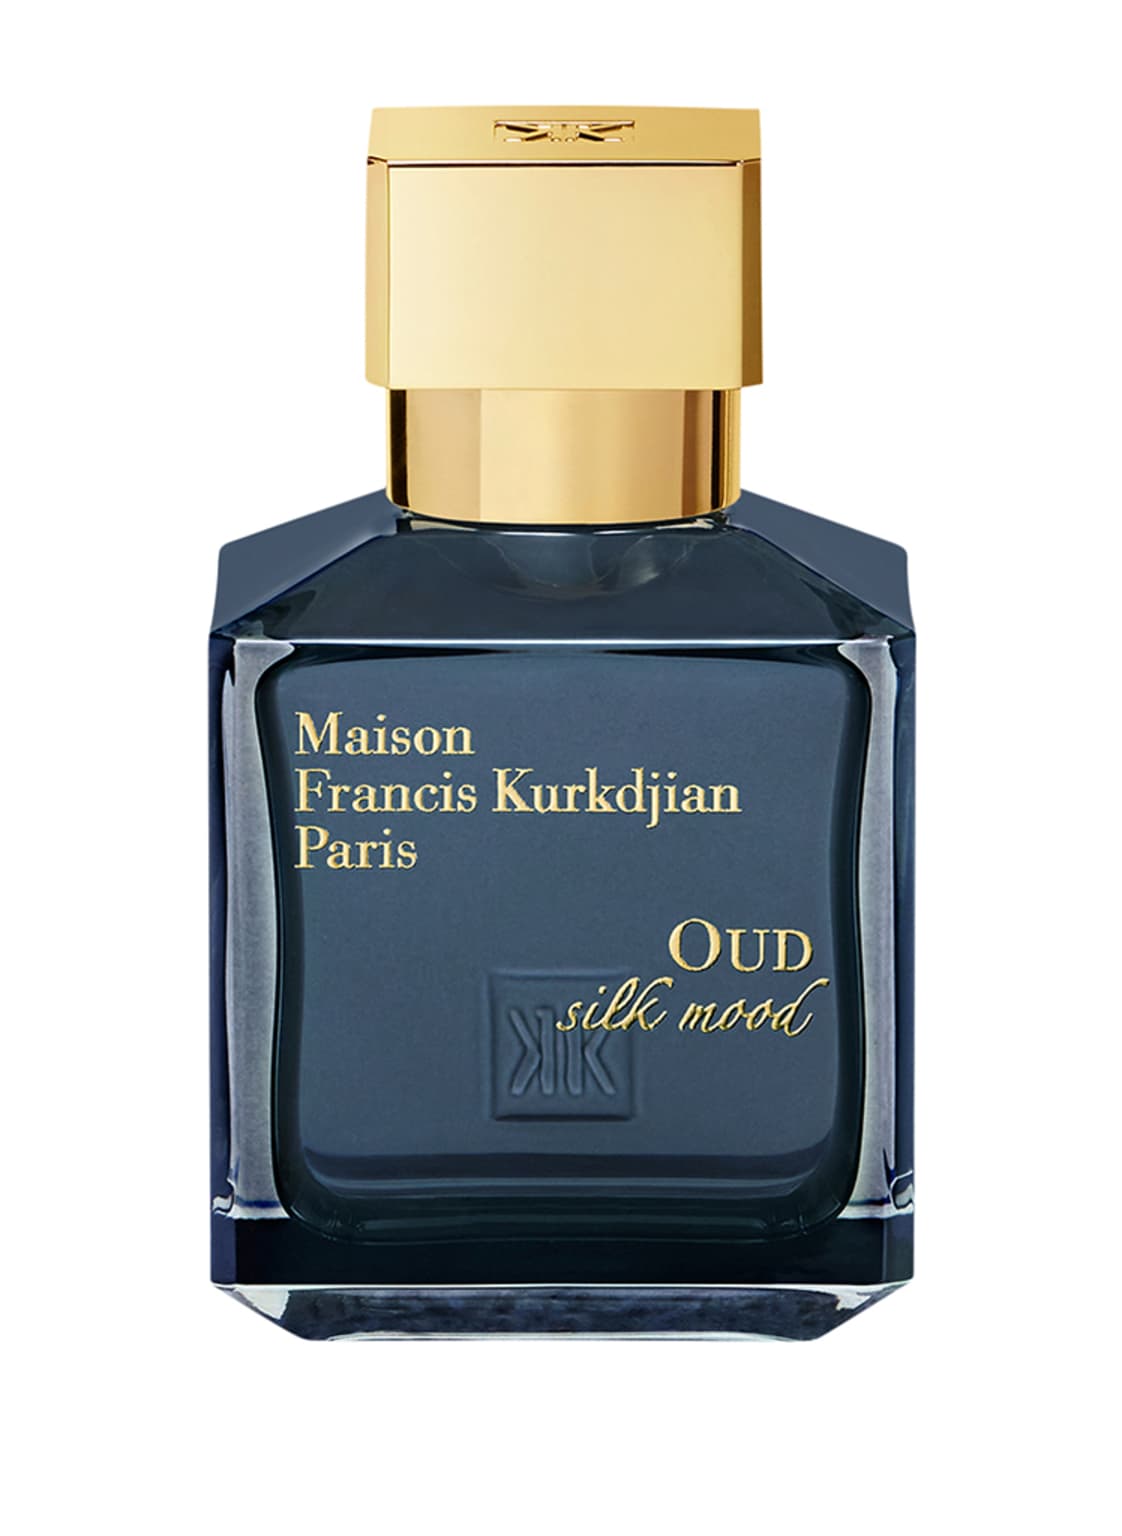 Maison Francis Kurkdjian Paris Oud Silk Mood Eau de Parfum 70 ml von Maison Francis Kurkdjian Paris